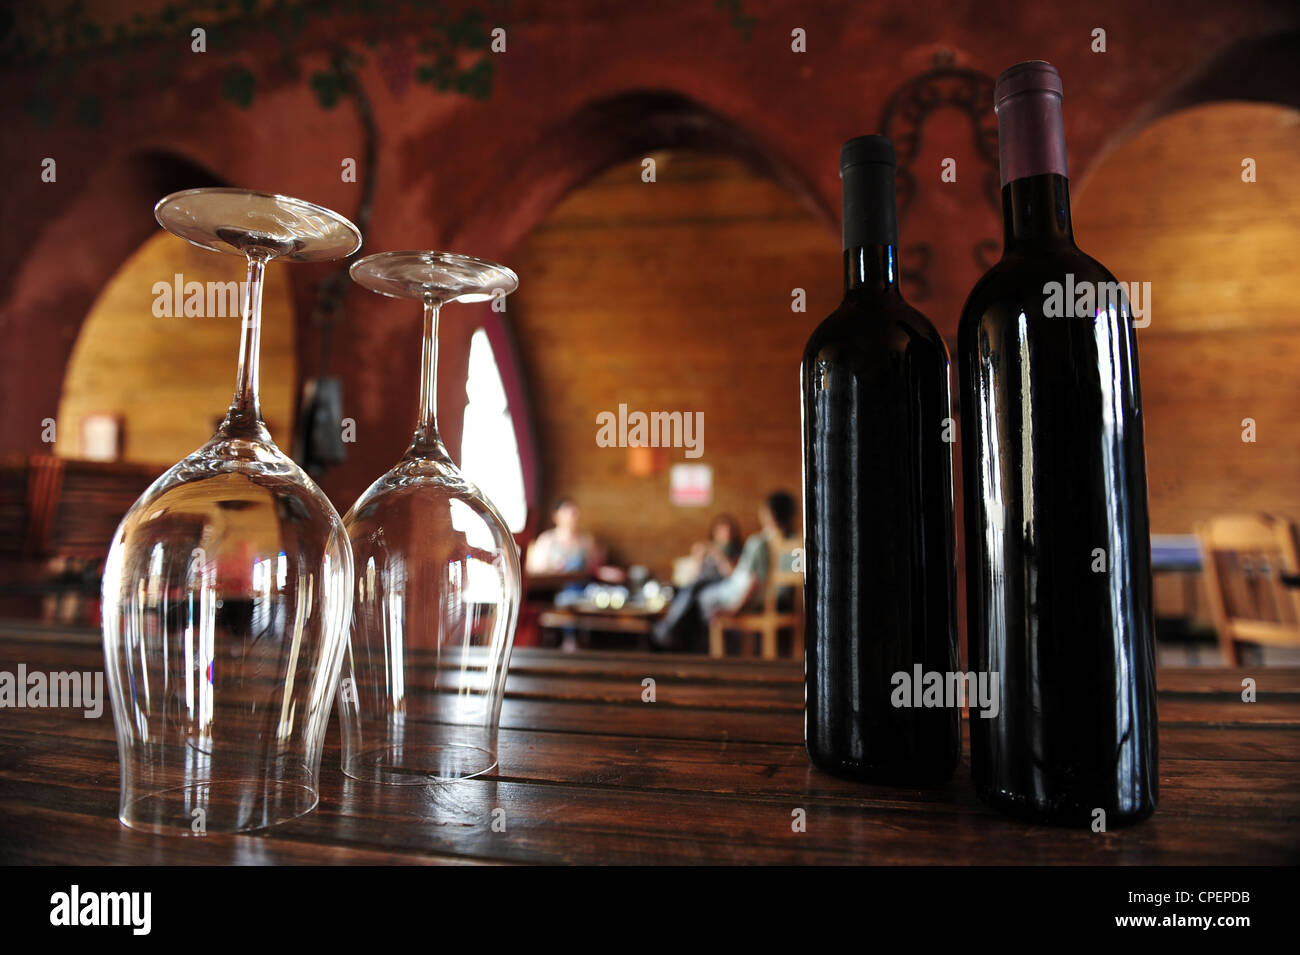 Wein Schlachten und Gläser in einem Weinberg Stockfotografie - Alamy